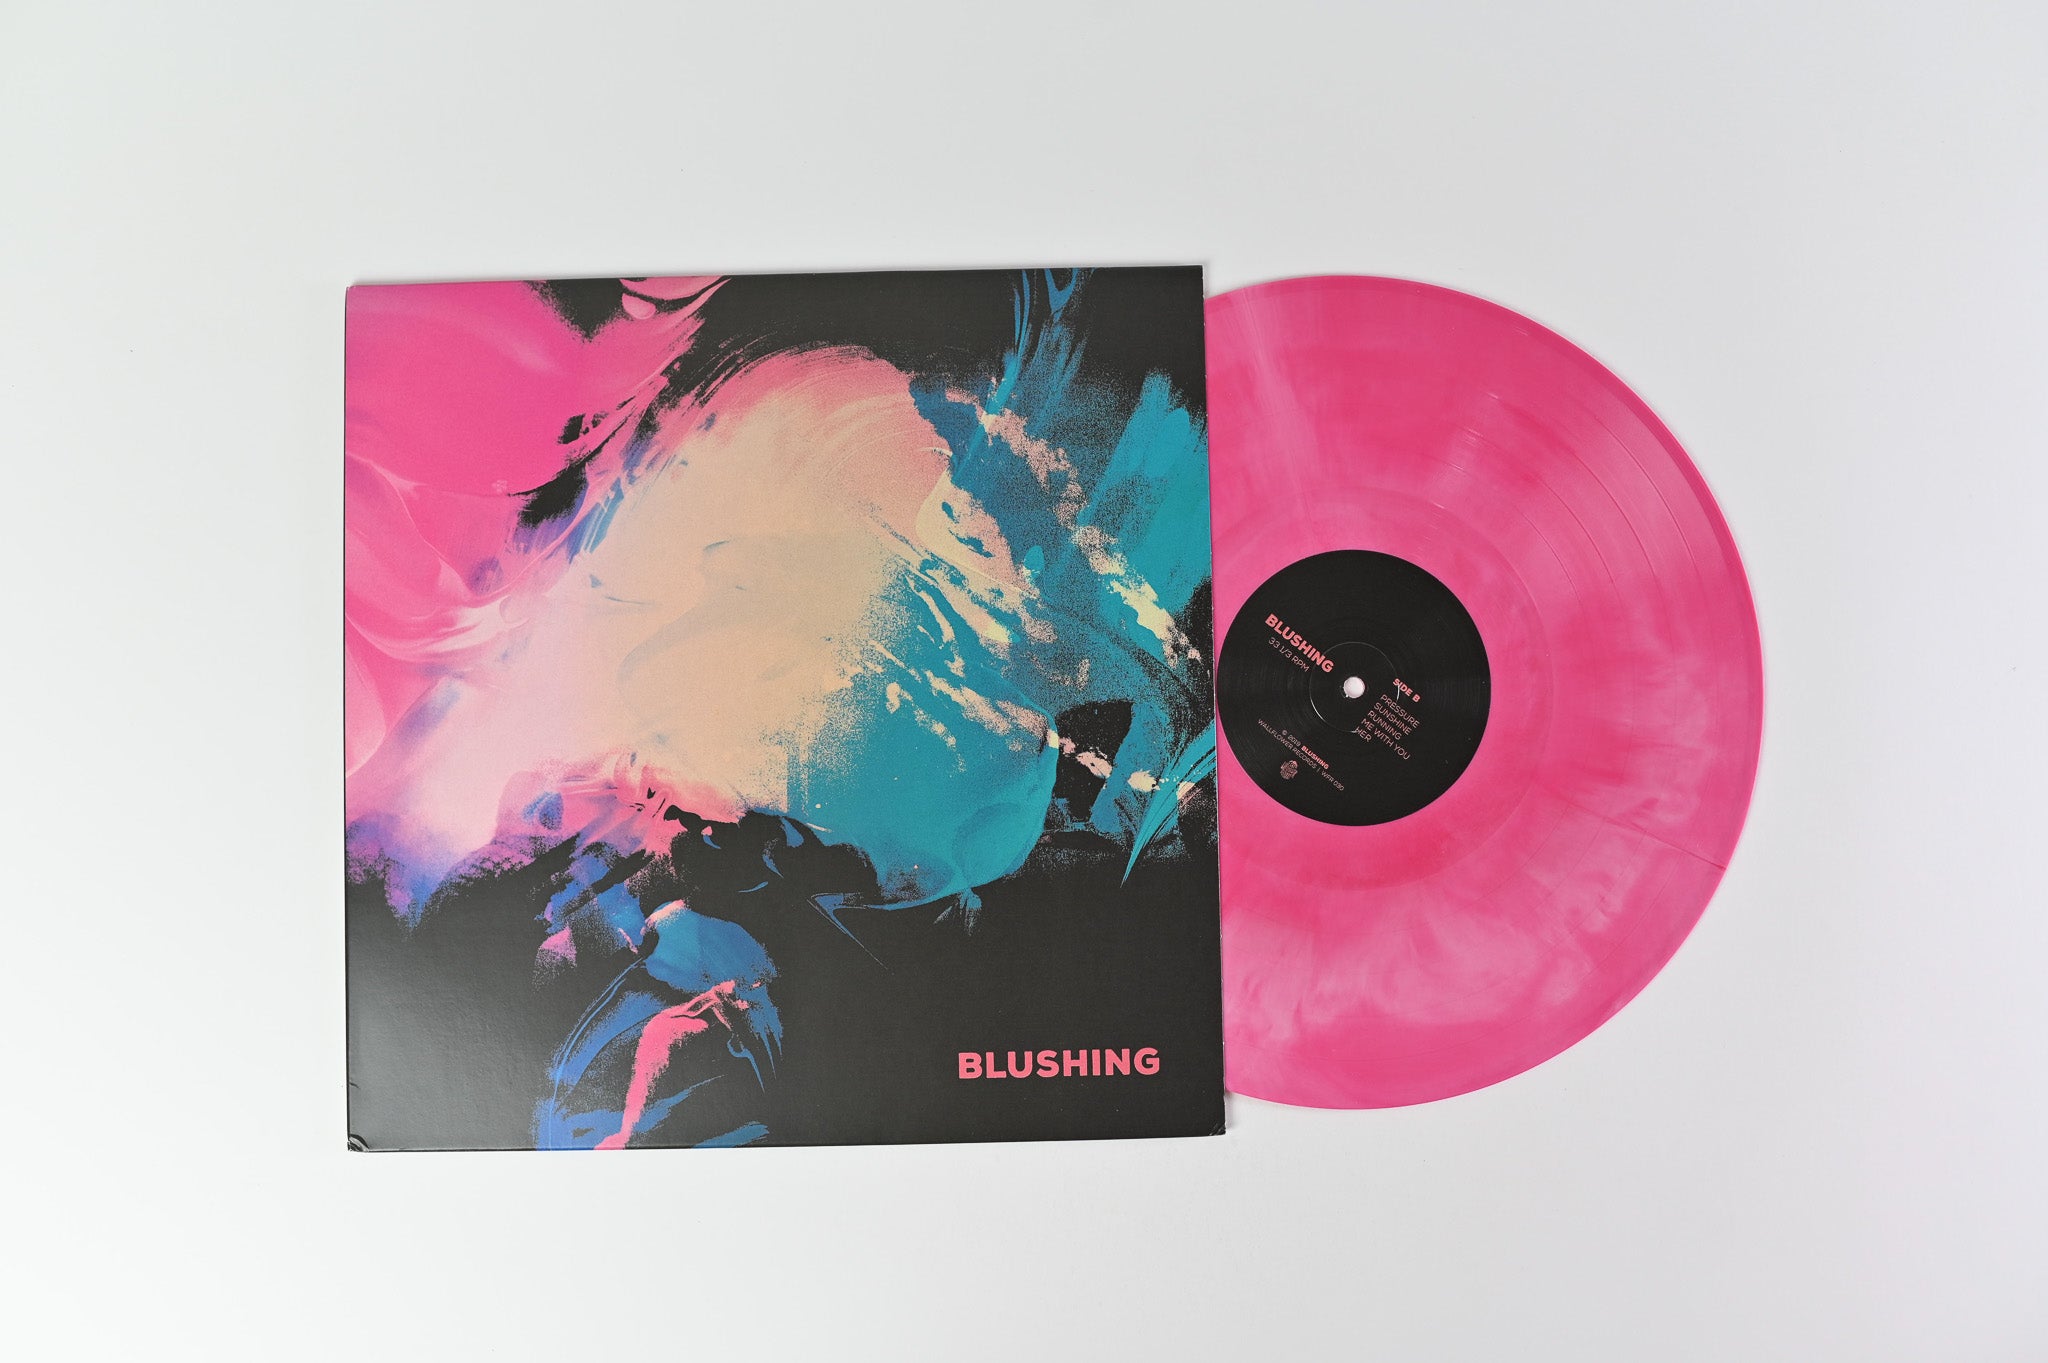 Blushing - Blushing on Wallflower Ltd Pink Galaxy Swirl